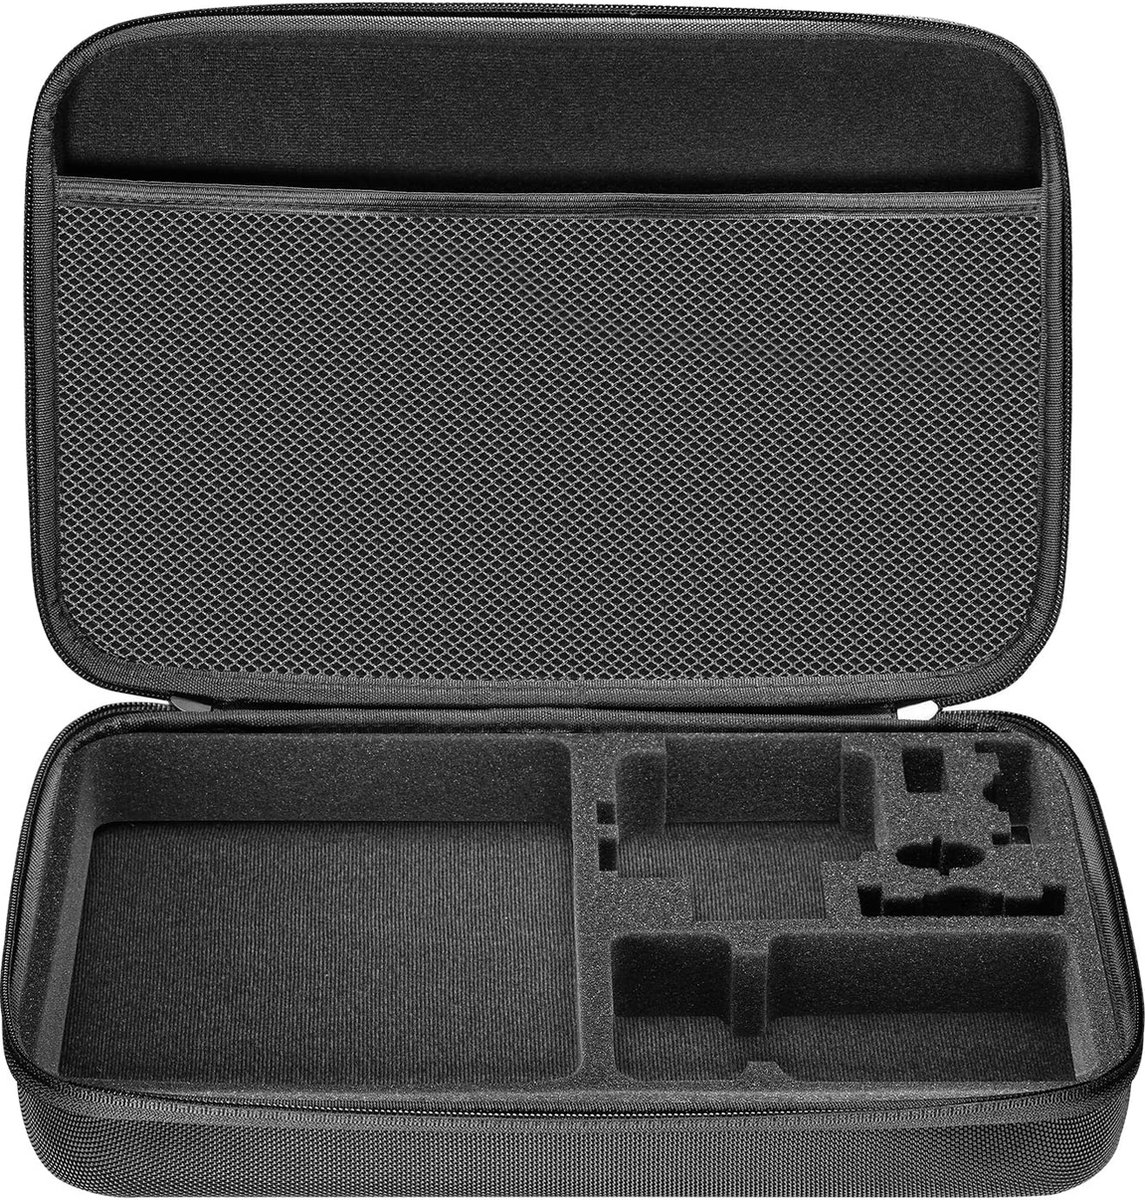 Neewer® - EVA Impact Resistant - Draagtas - Geschikt voor GoPro - Hero - 1/2/3/3+/4/5/6/7/4 - Session - Camera's & Accessoires - Zwart - Koffers & Tassen - Camcorder Cases